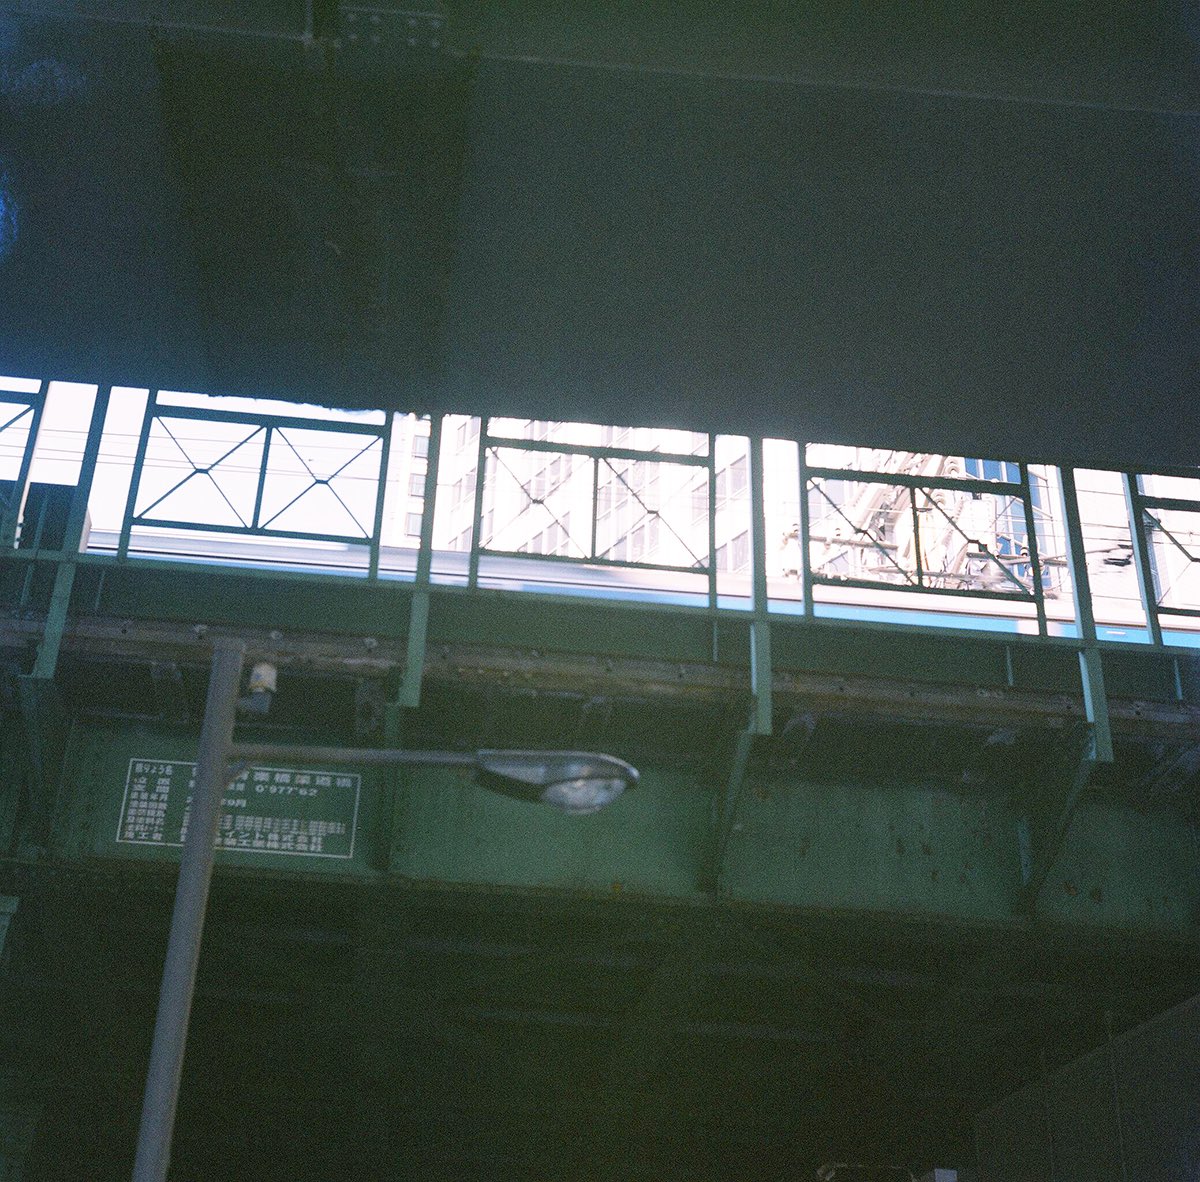 WAIKIKI PHOTOGRAPH
railroad , ginza japan
#ginza 
#railroad 
#filmdevelopment 
#フィルム現像 
#streetphotography 
#filmphotography 
#filmcamera 
#rolleiflex 
#rolleiflex28f 
#ローライフレックス 
#ローライフレックス28f 
#フィルムカメラ 
#ブローニー 
#waikiki_inc_photograph